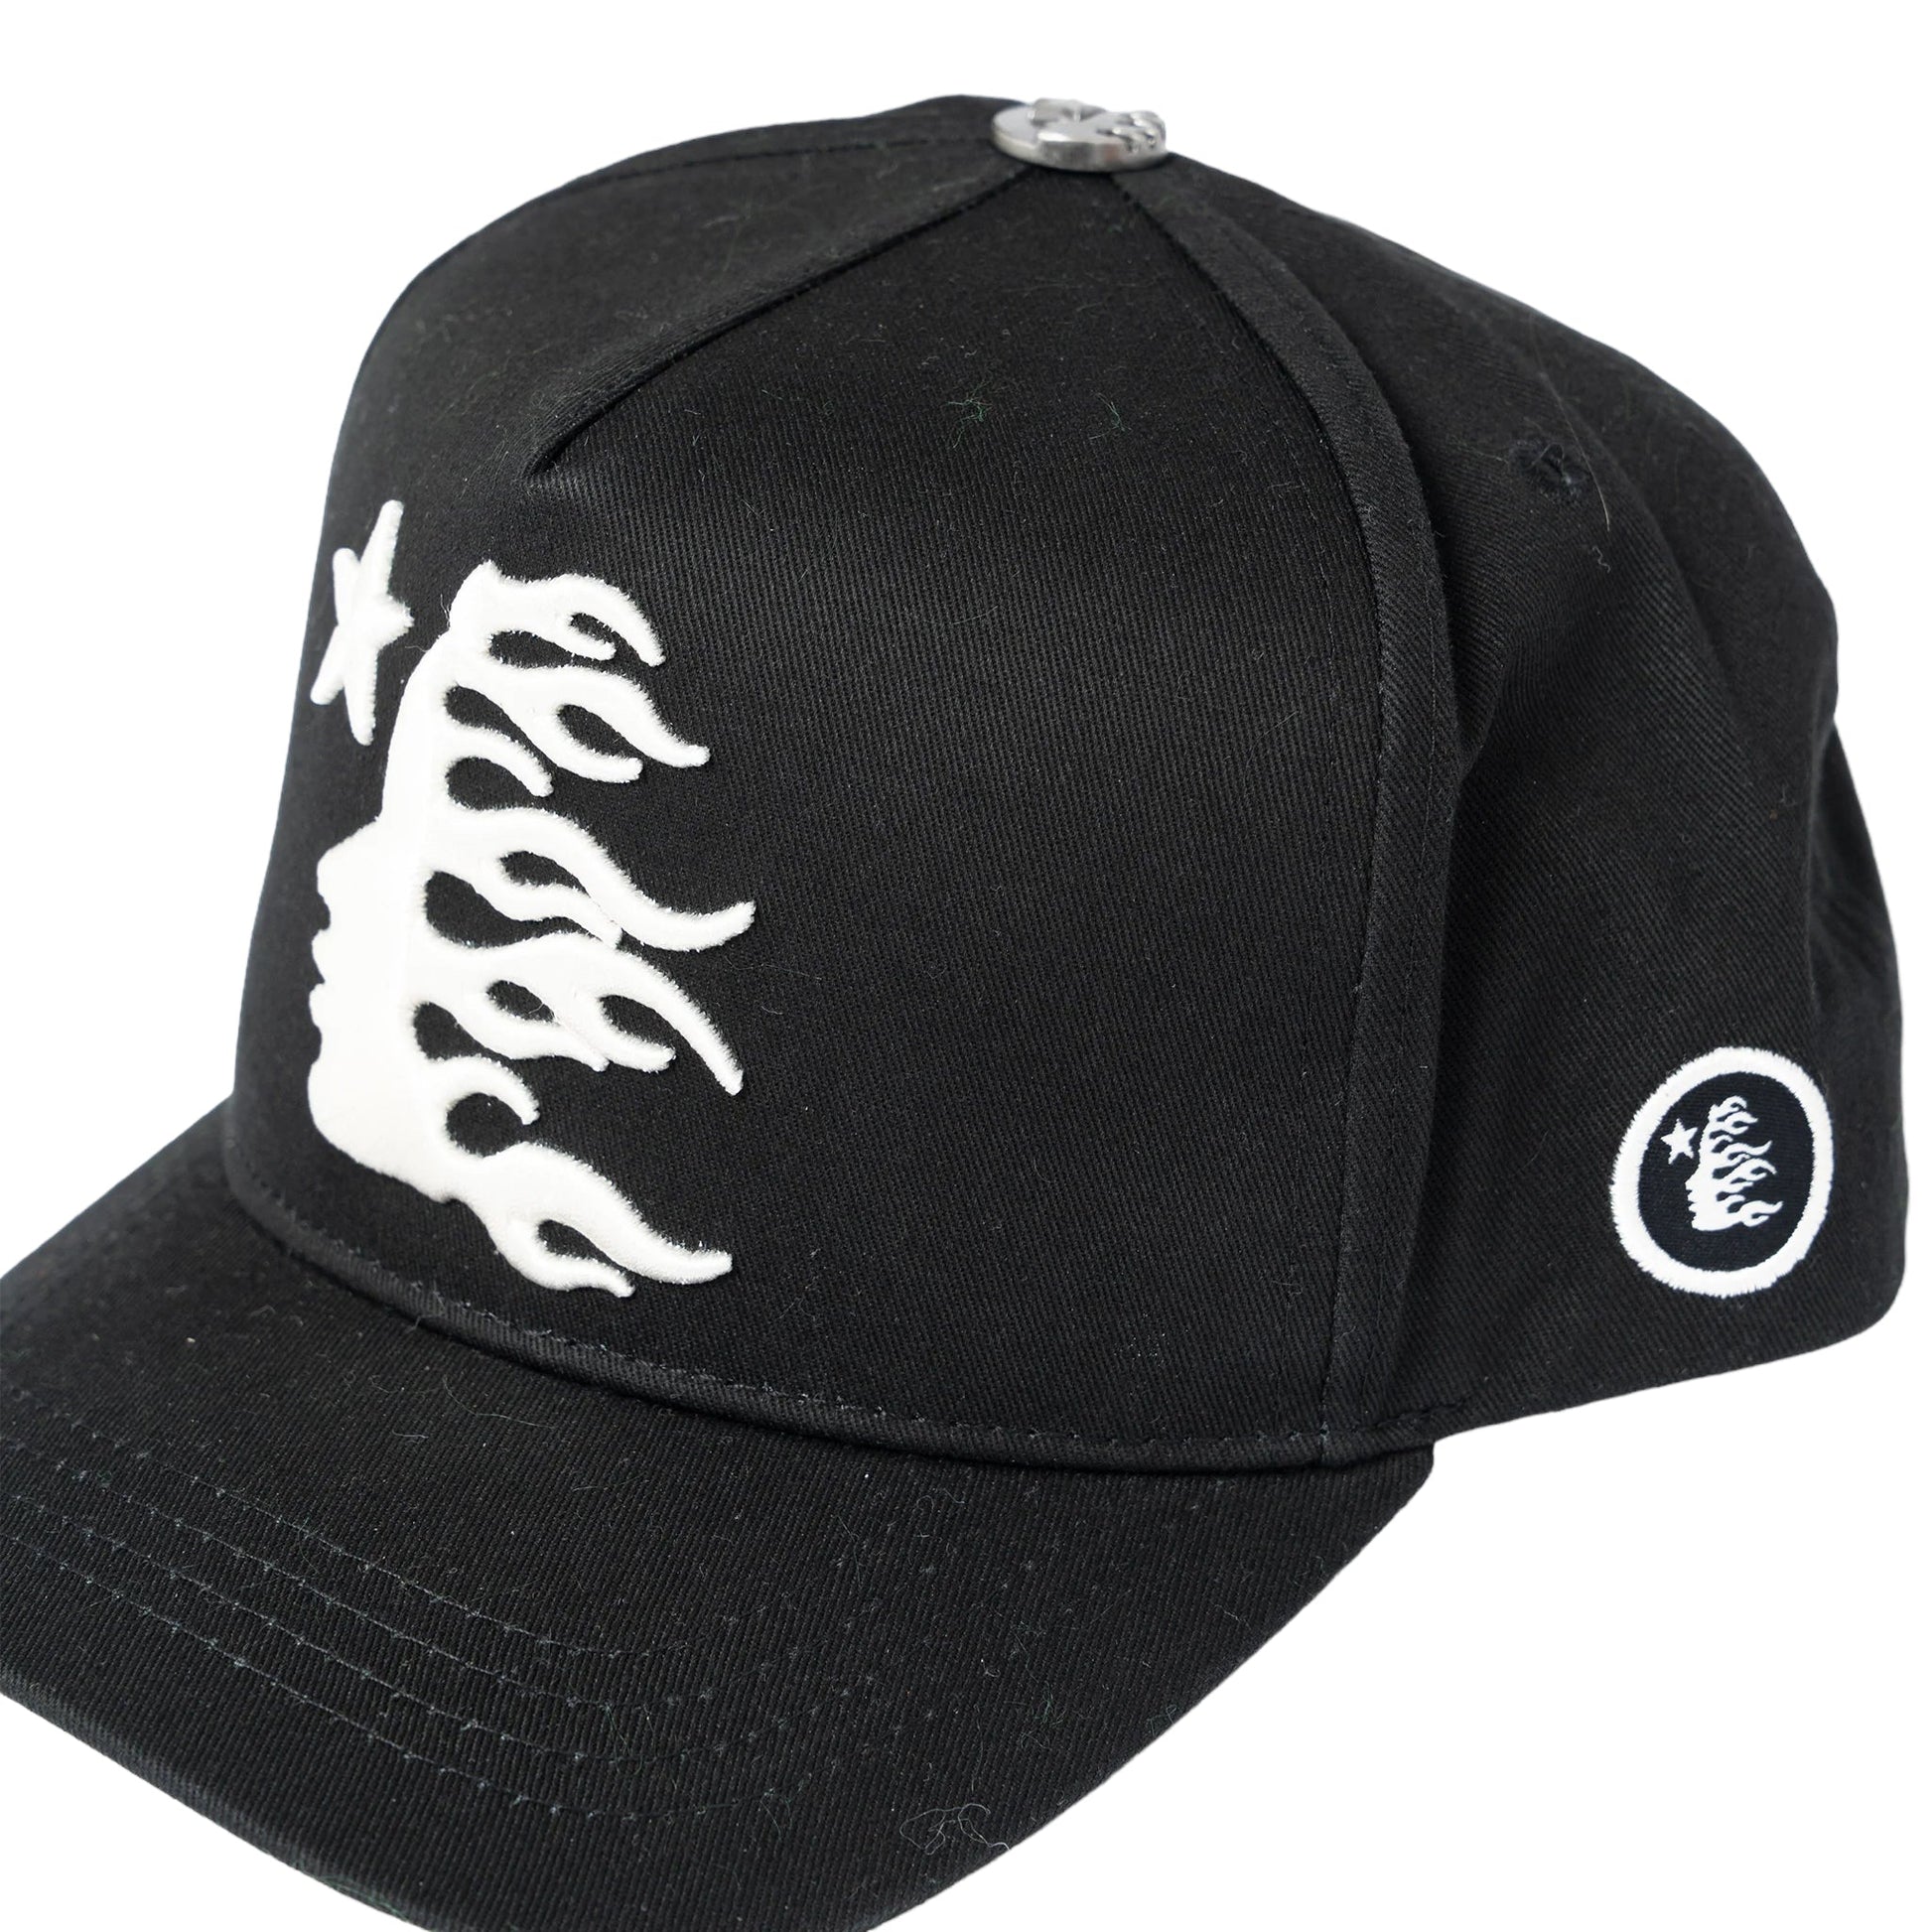 Hellstar OG SnapBack Hat (Black) - Supra Sneakers